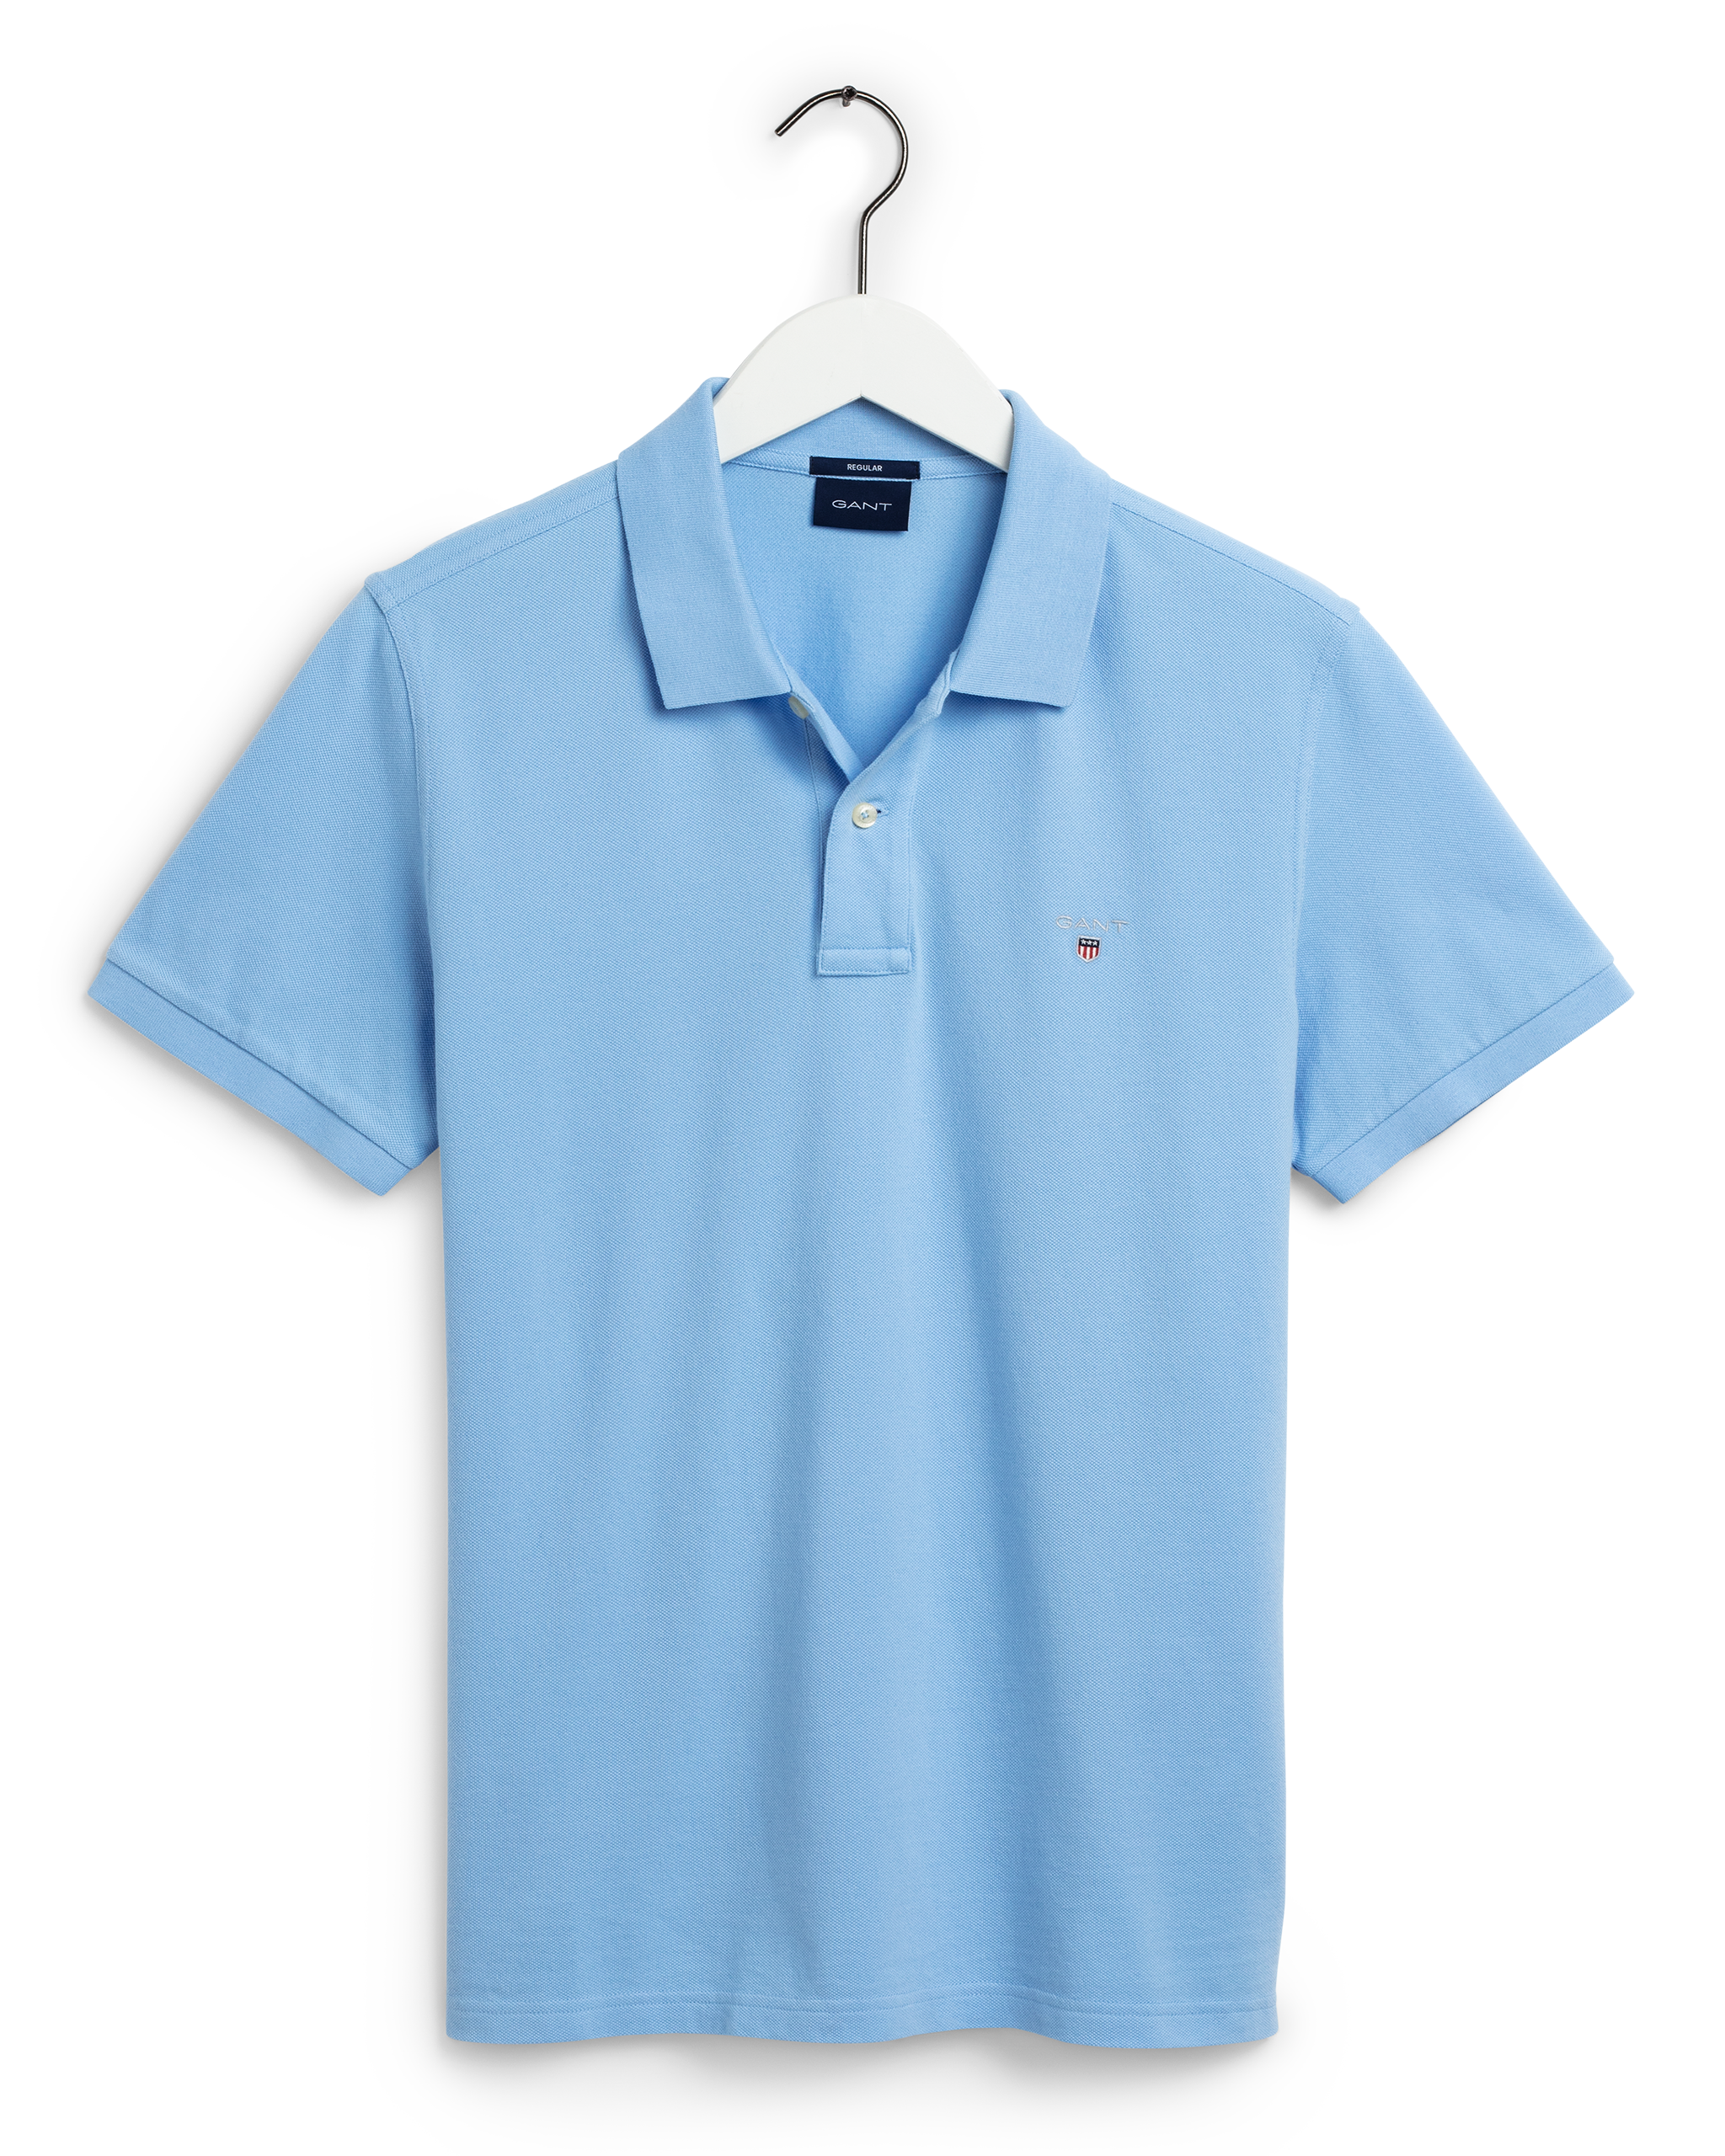 Original Pique Polo T-shirt, Light Blue, 4XL